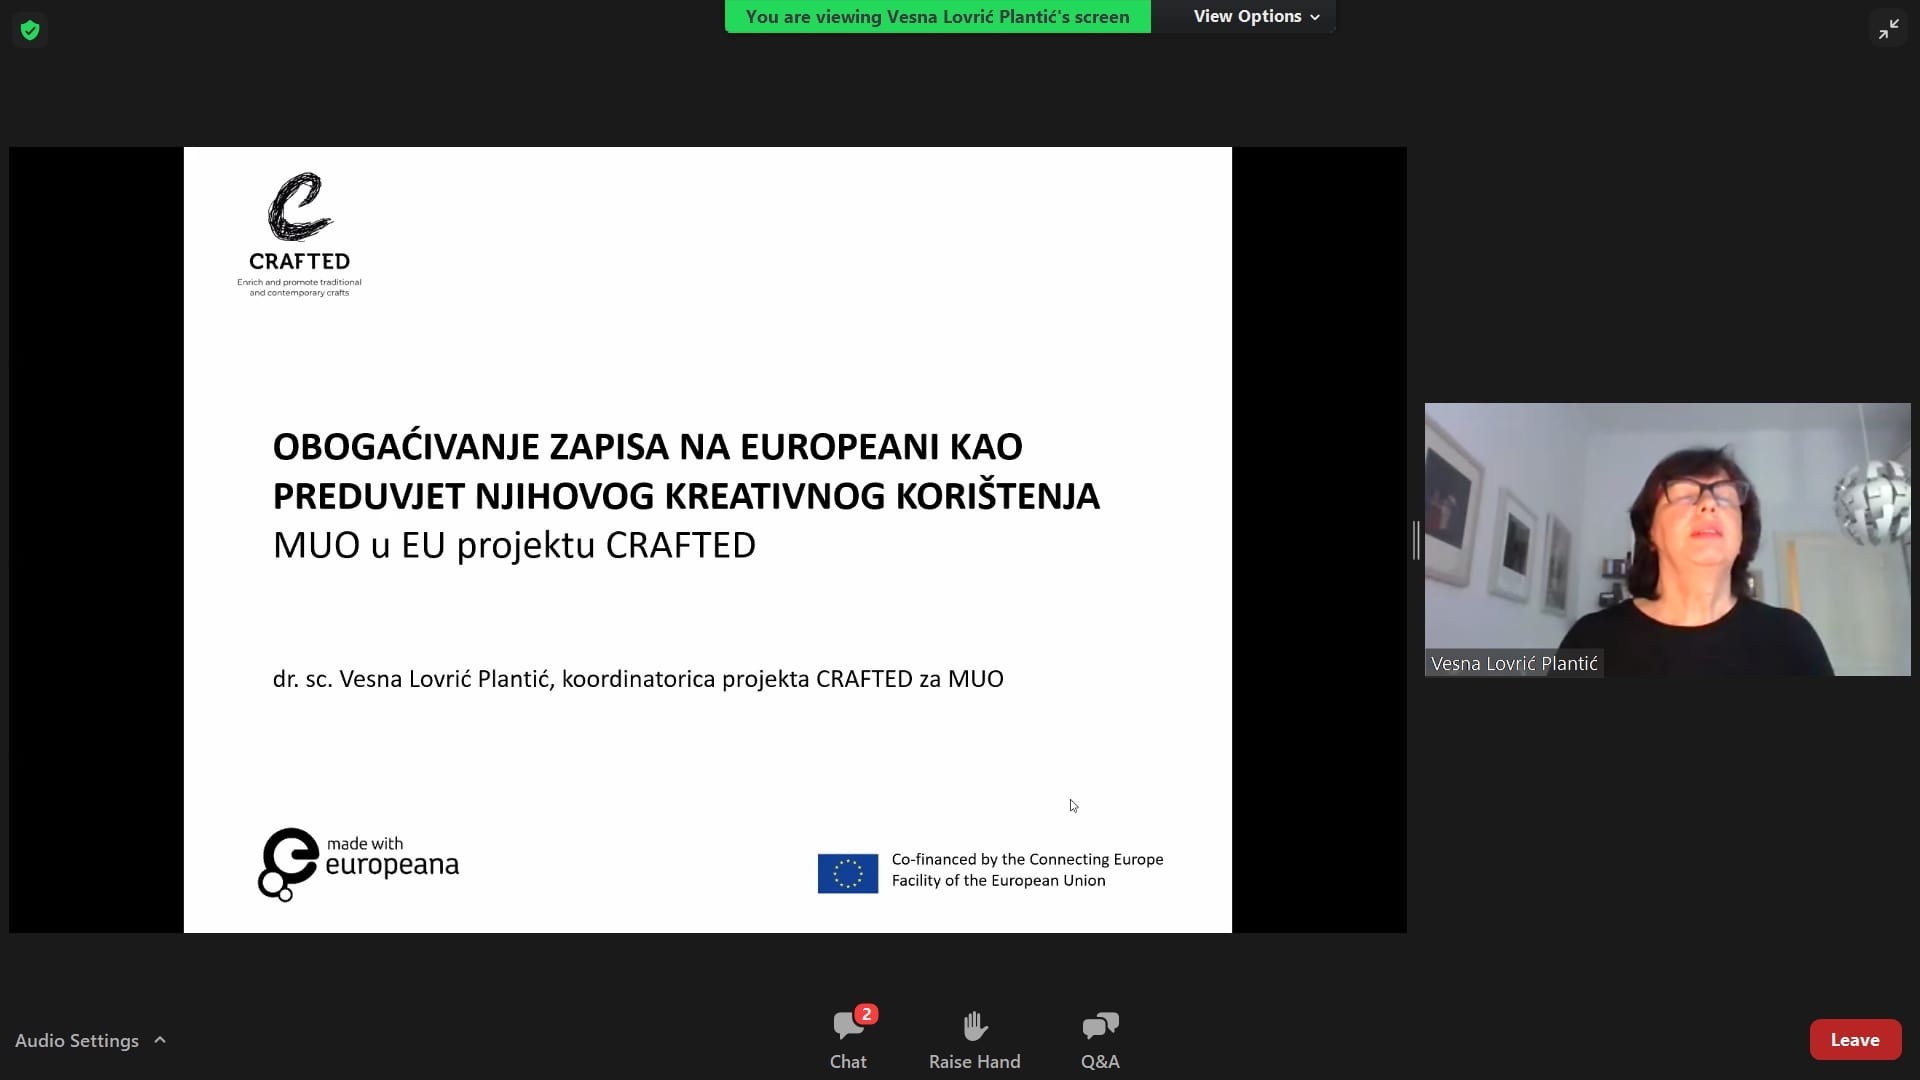 Vesna Lovrić Plantić (Muzej za umjetnost i obrt): Obogaćivanje zapisa na Europeani kao preduvjet njihovog kreativnog korištenja – MUO u EU projektu Crafted